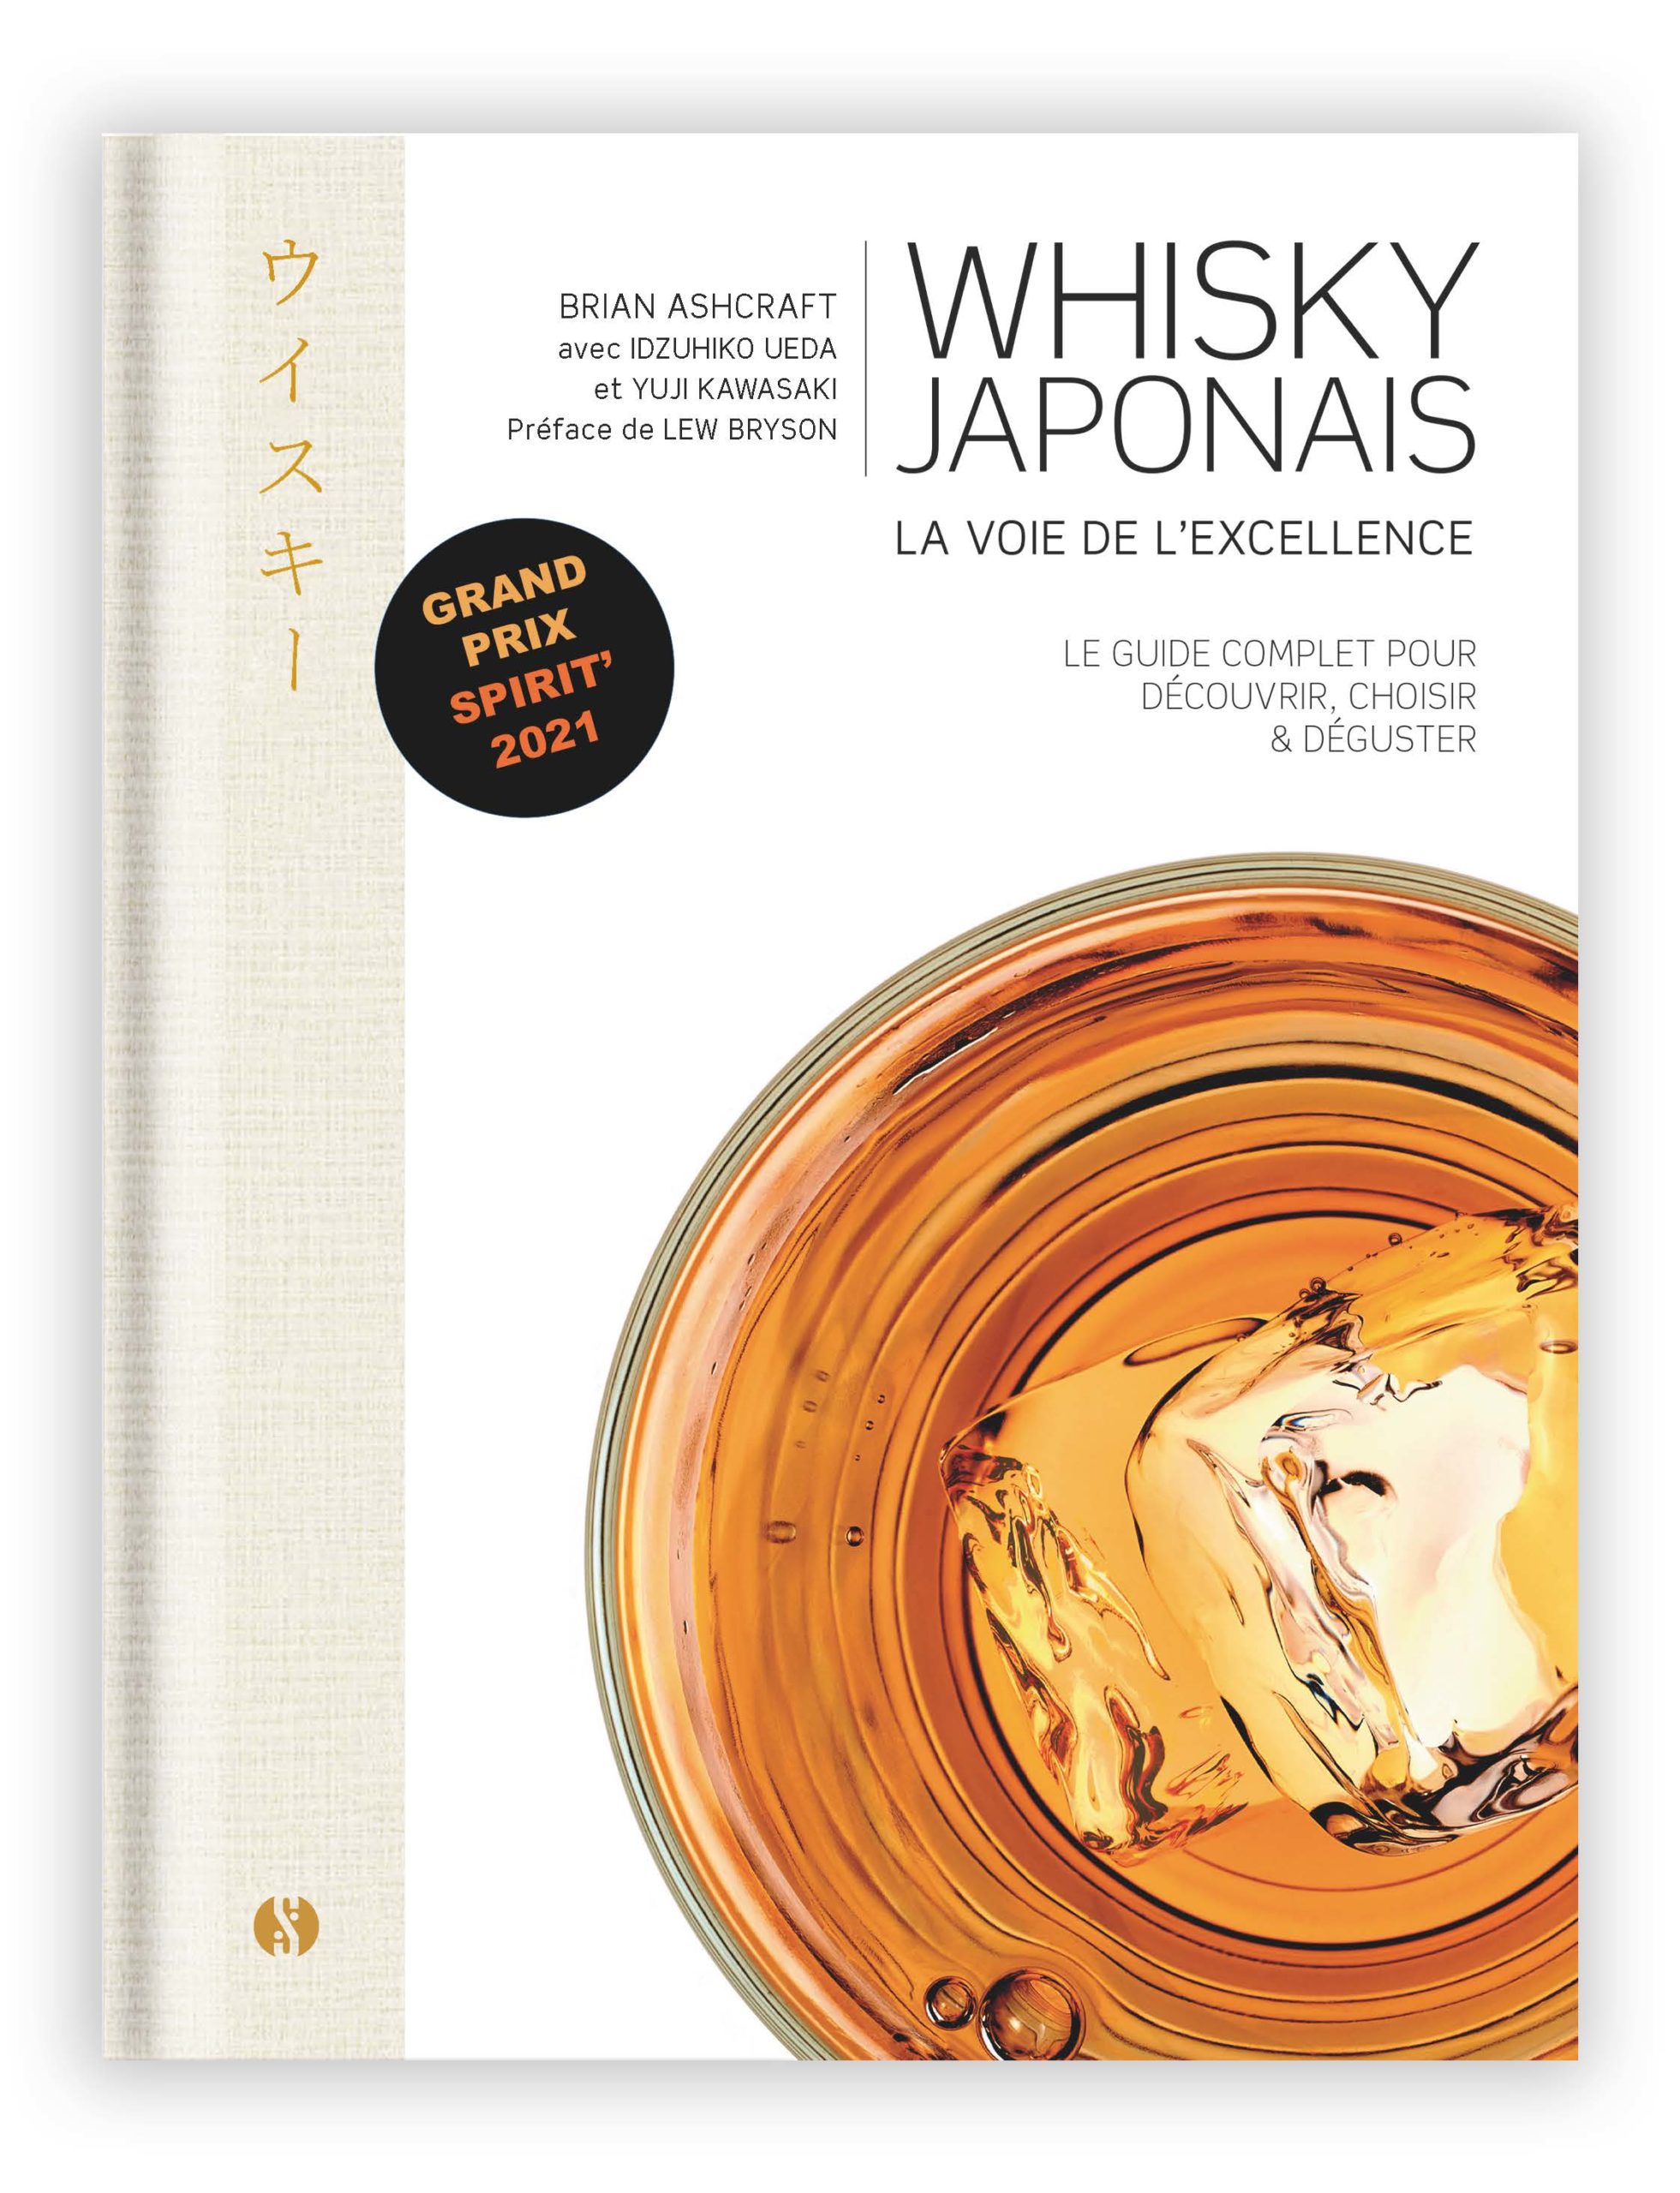 Whisky japonais, la voie de l’excellence de Brian Ashcraft est paru chez Synchronique éditions .